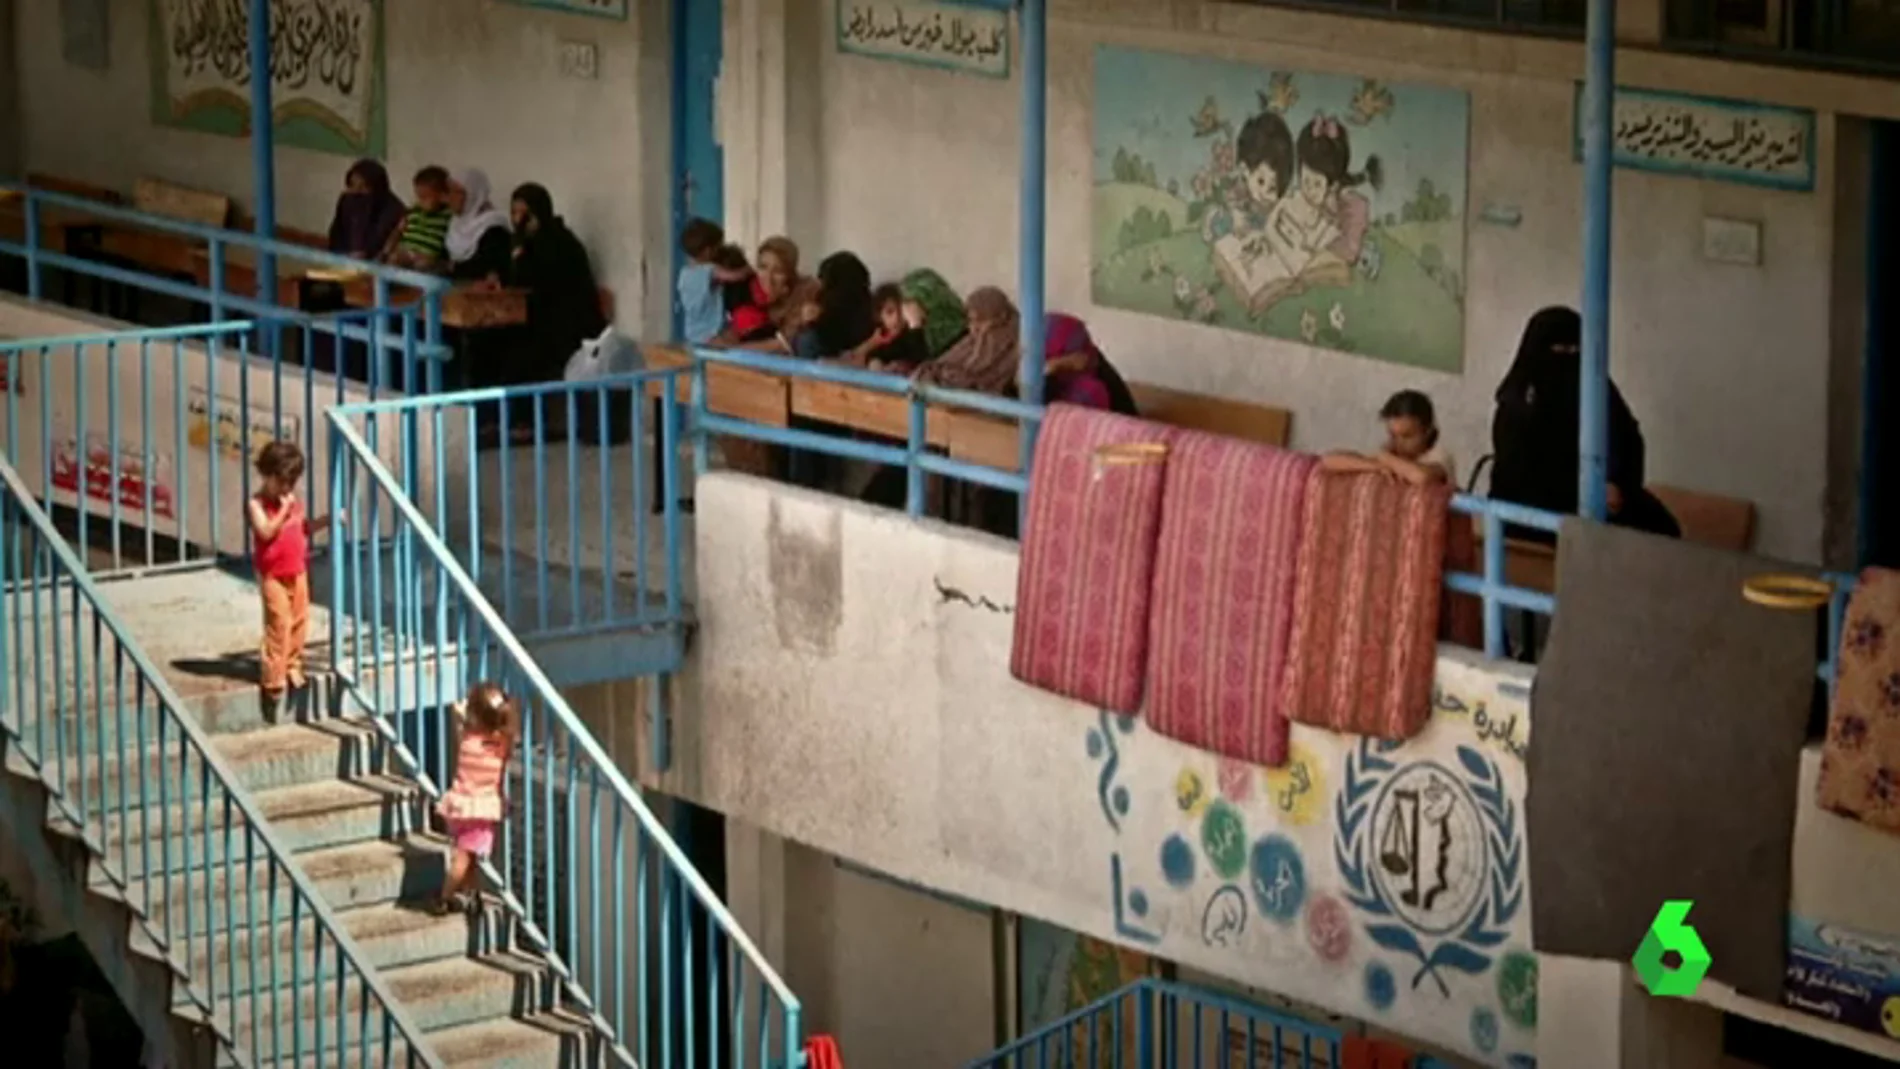 Frame 169.365832 de: Encerradas y usadas como moneda de cambio, así es la vida de las mujeres bajo el yugo machista en Gaza